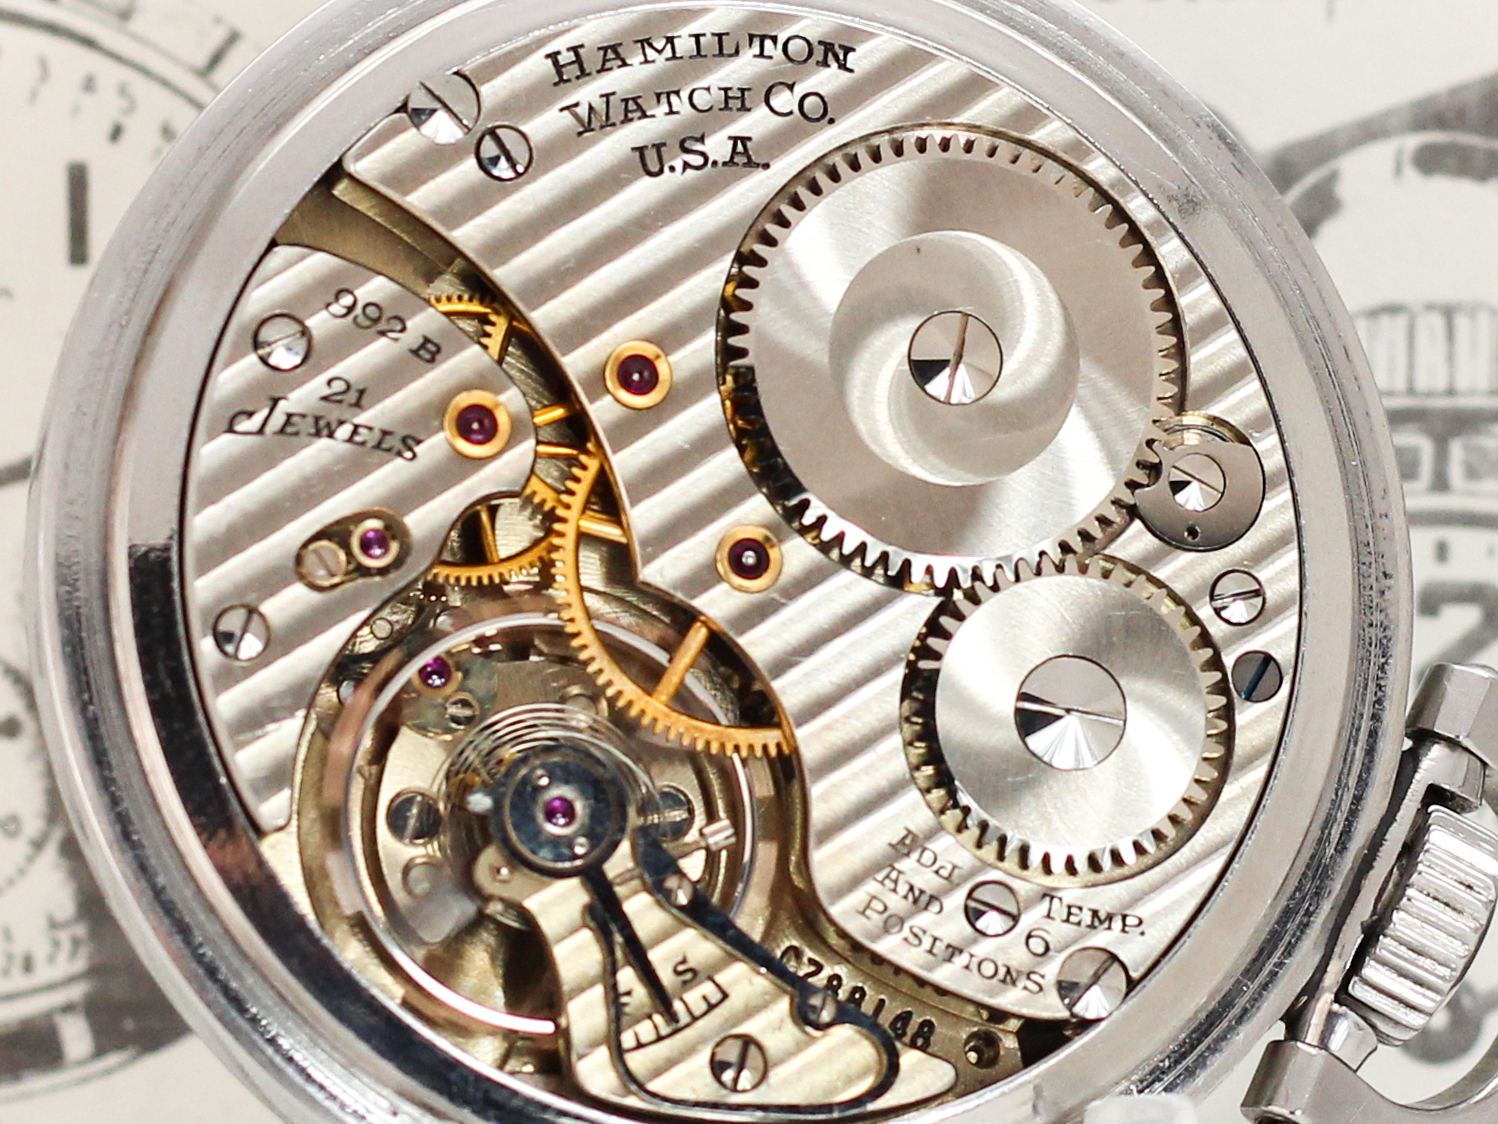 Hamilton watch movement showing damaskened finish